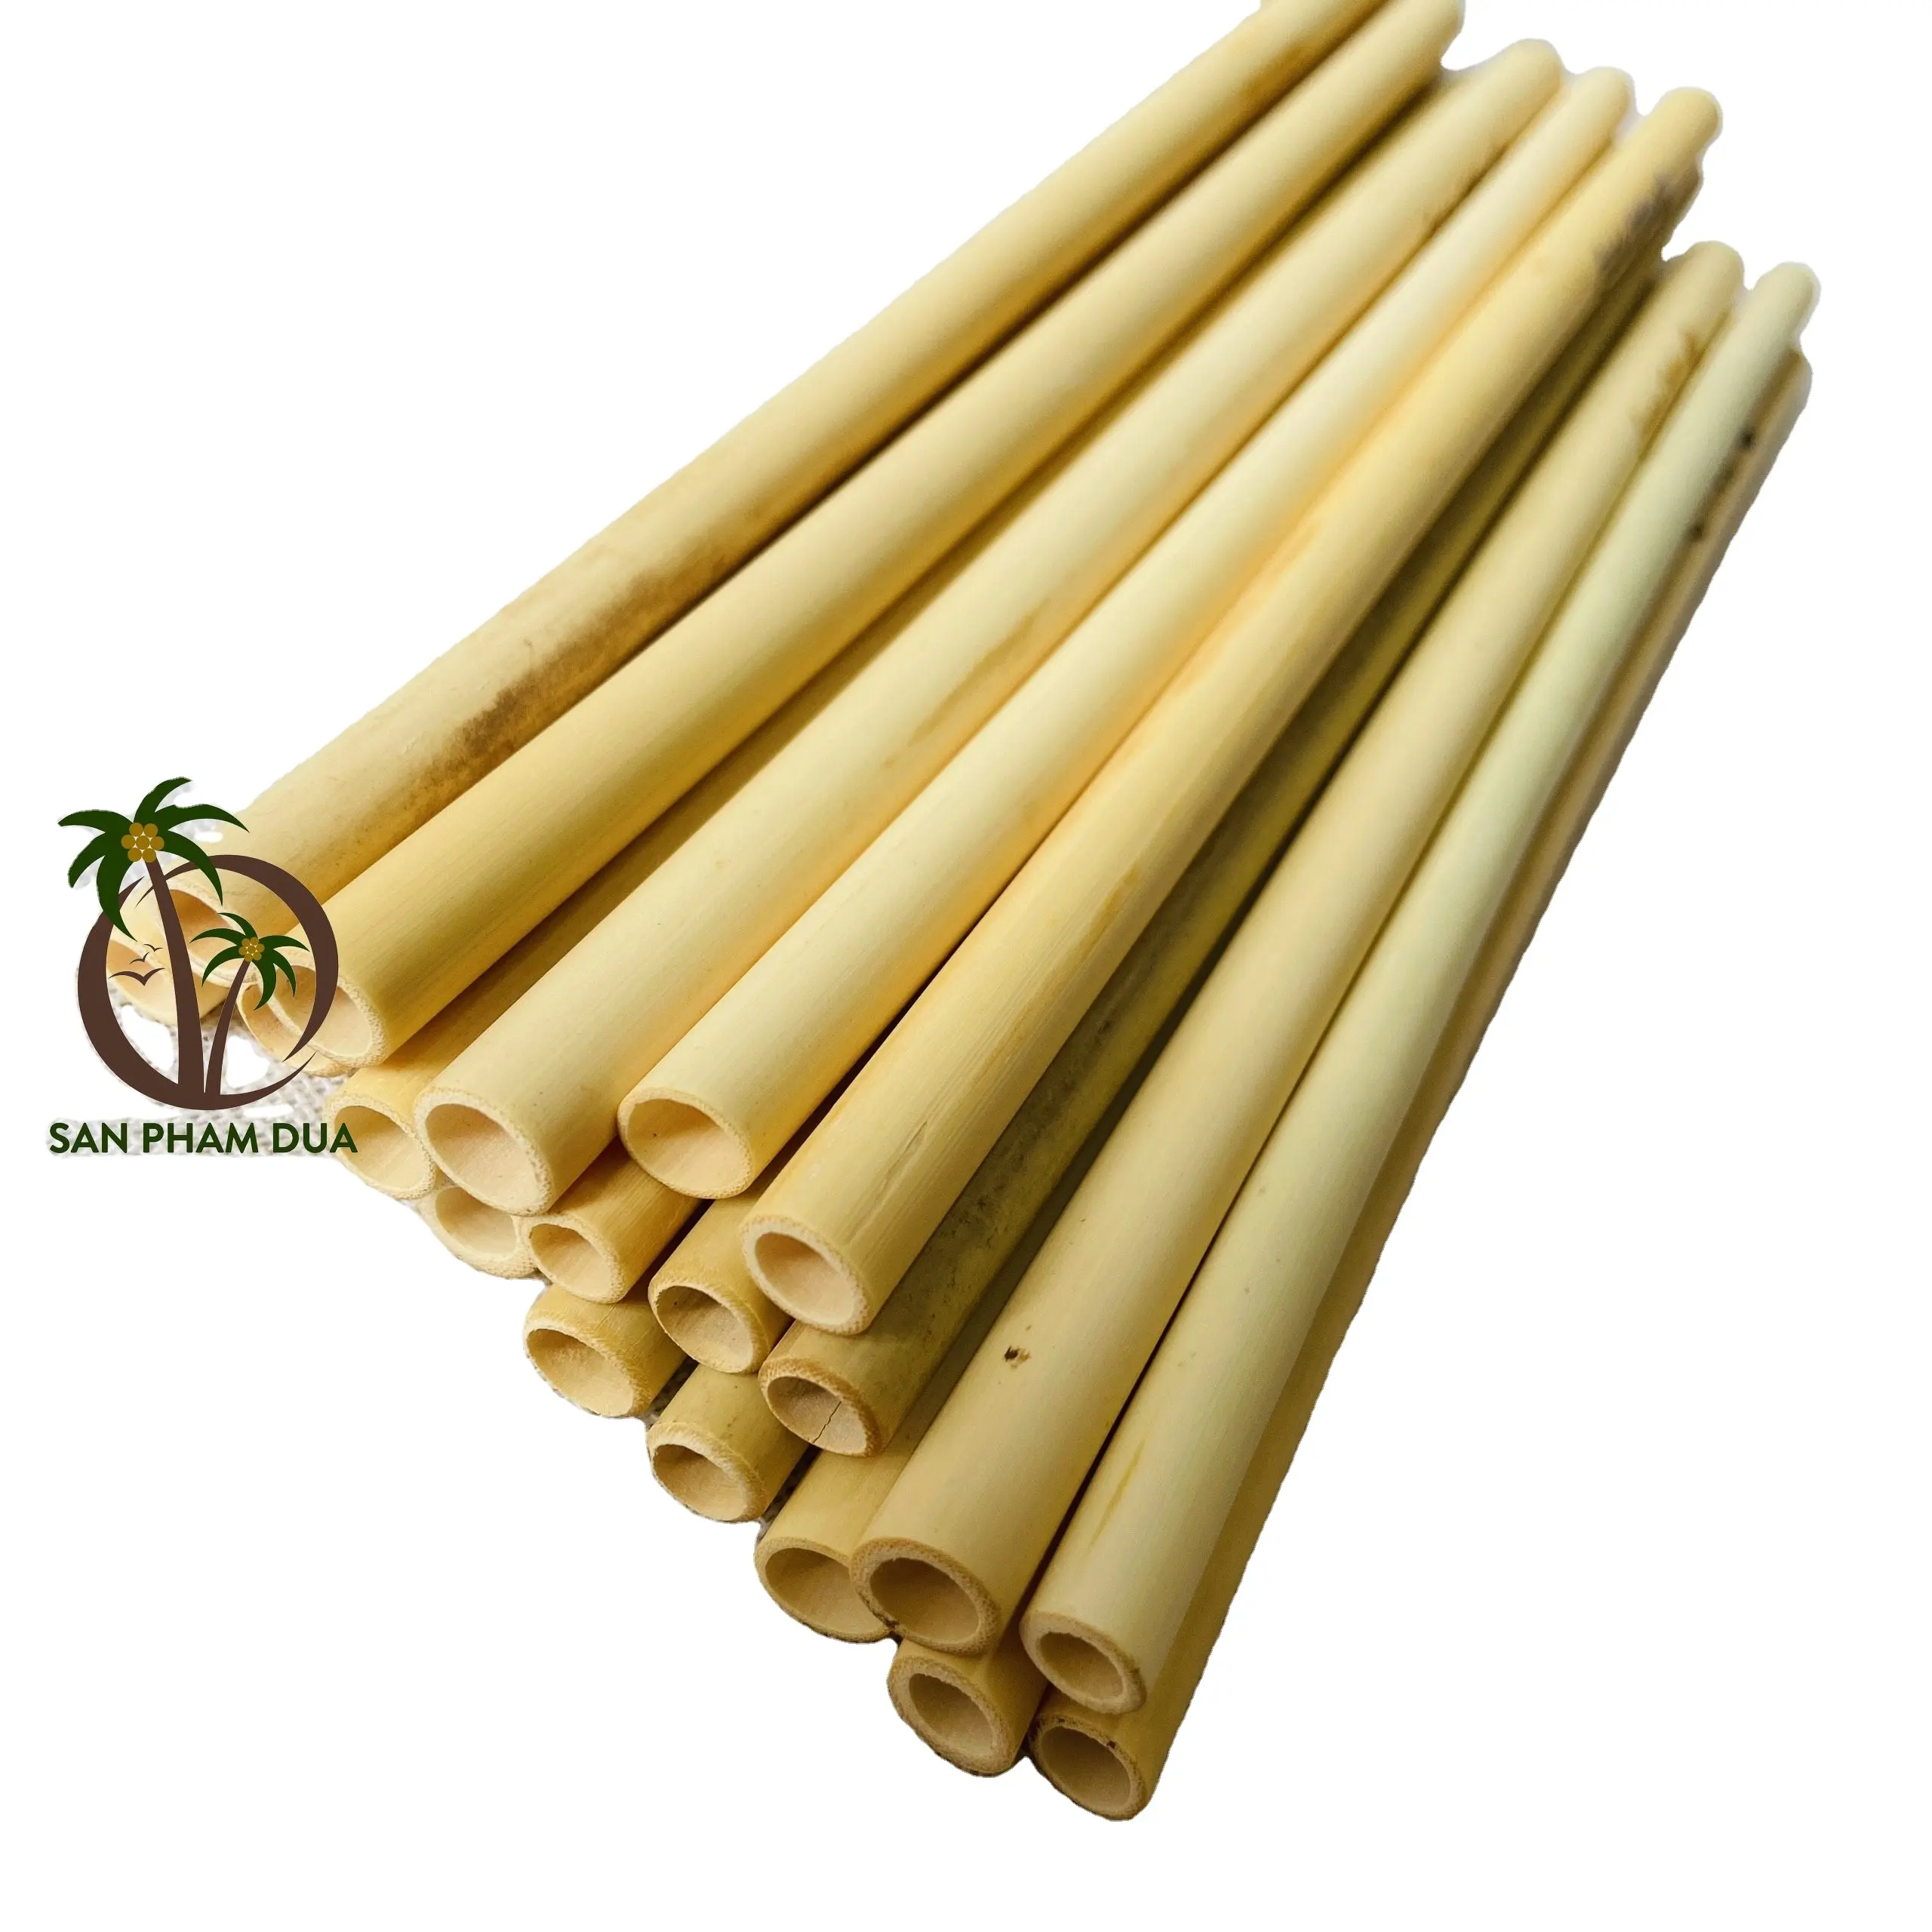 Экологичная натуральная бамбуковая солома, Бамбуковая Солома для путешествий, оптовая продажа, Бамбуковая солома высокого качества из Вьетнама